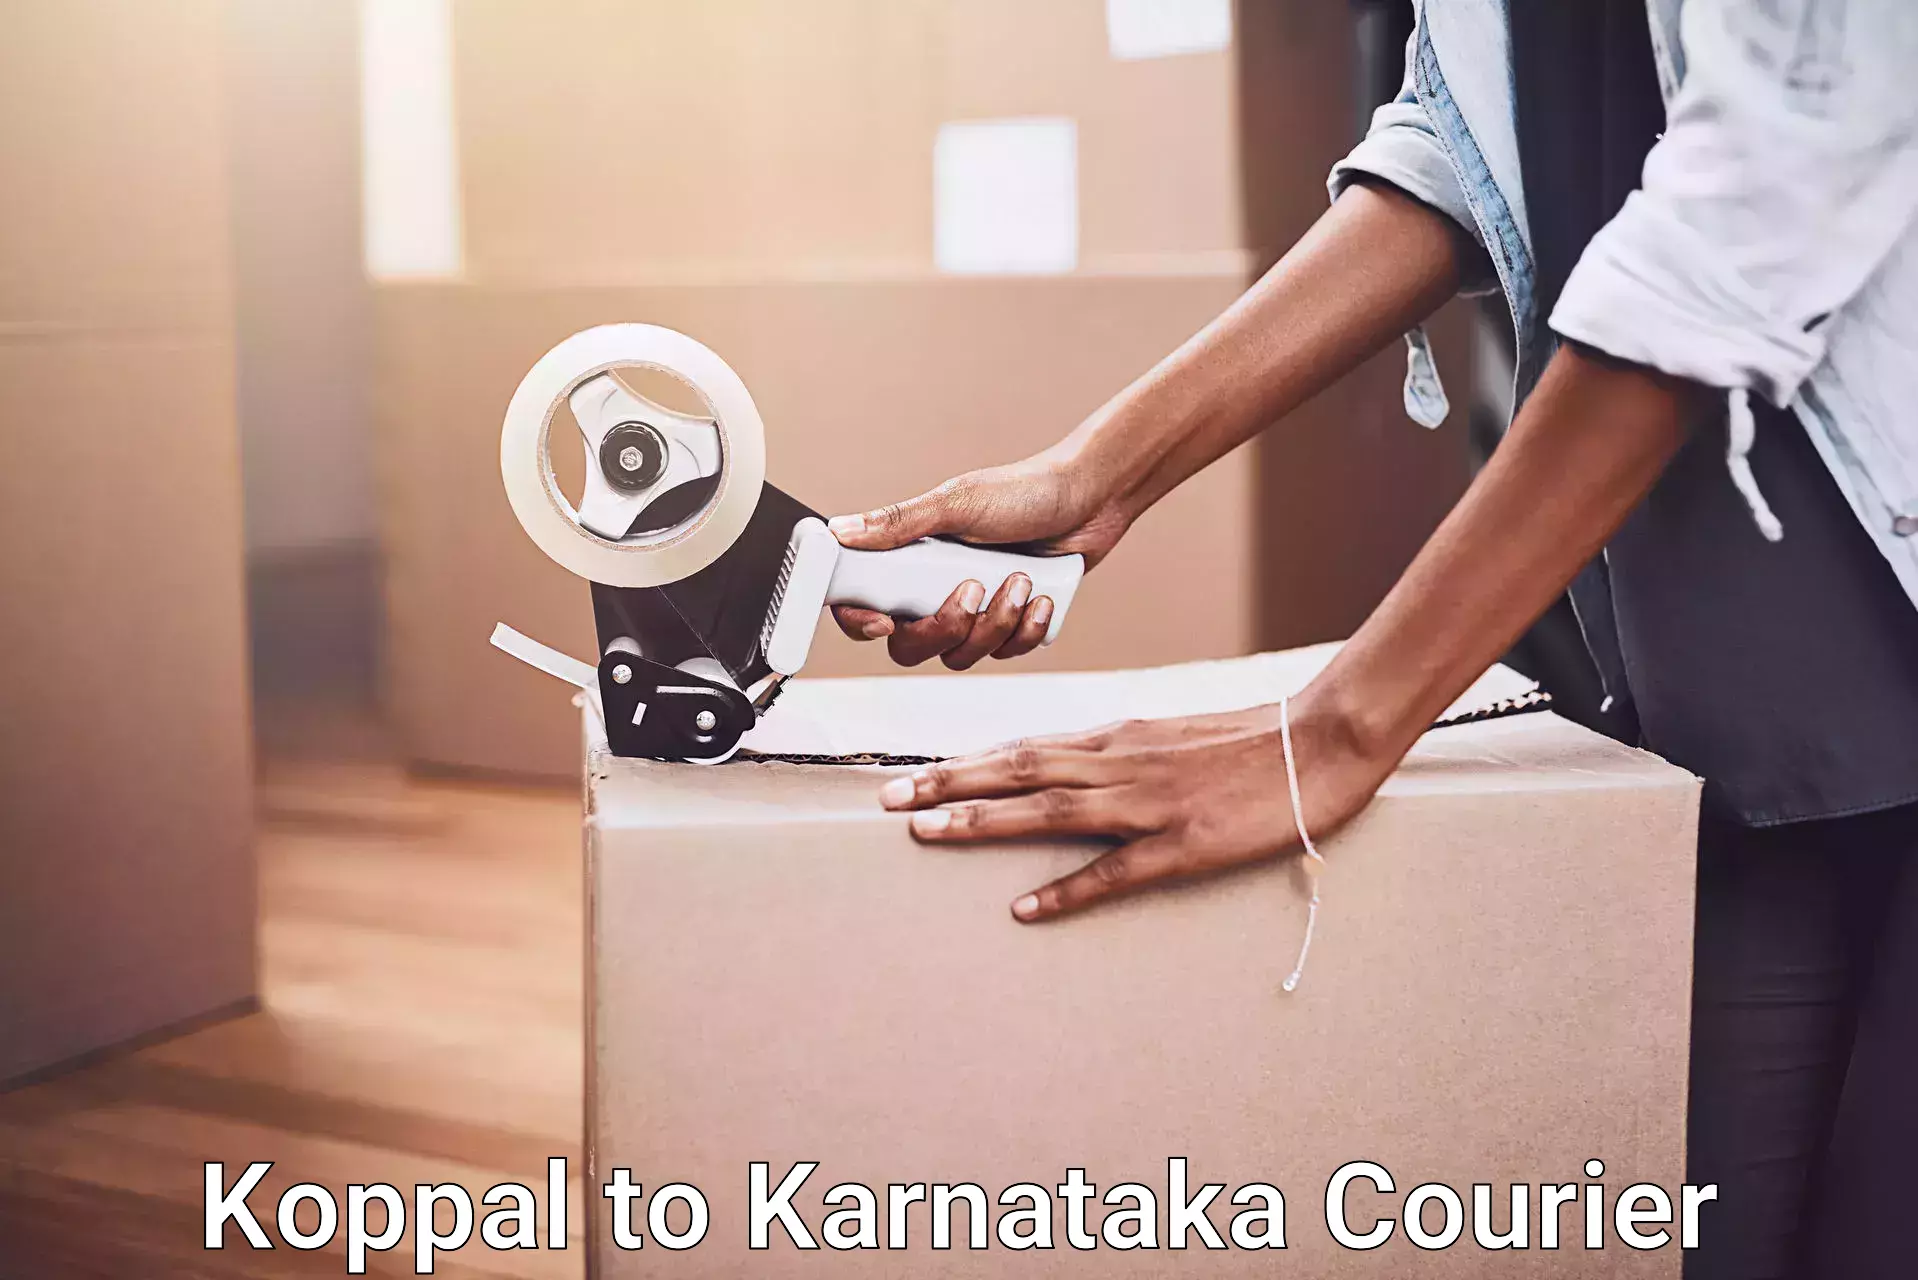 Furniture moving experts in Koppal to Karnataka